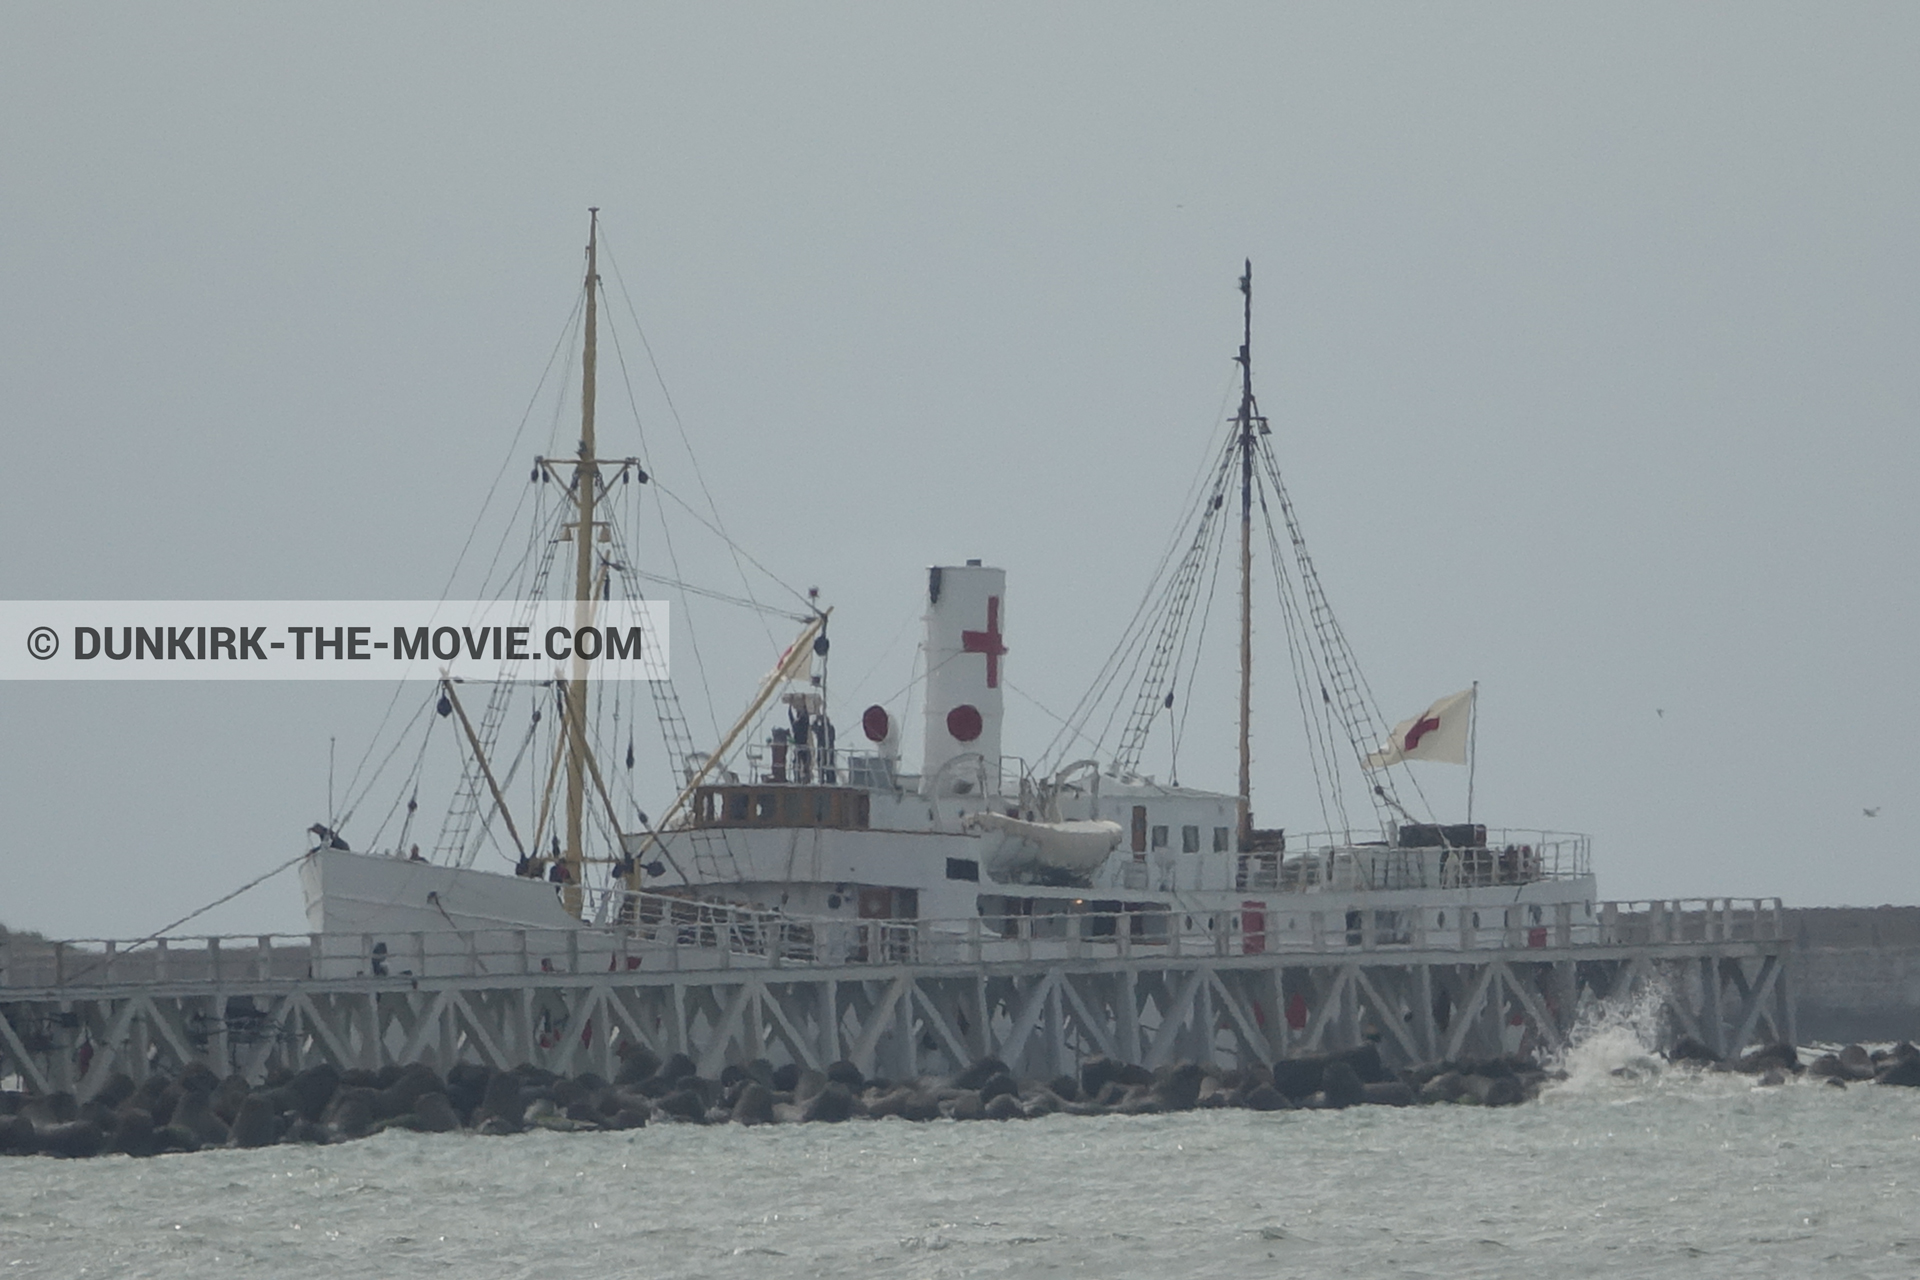 Fotos con barco, cielo gris, muelle del ESTE, mares agitados, M/S Rogaland,  durante el rodaje de la película Dunkerque de Nolan